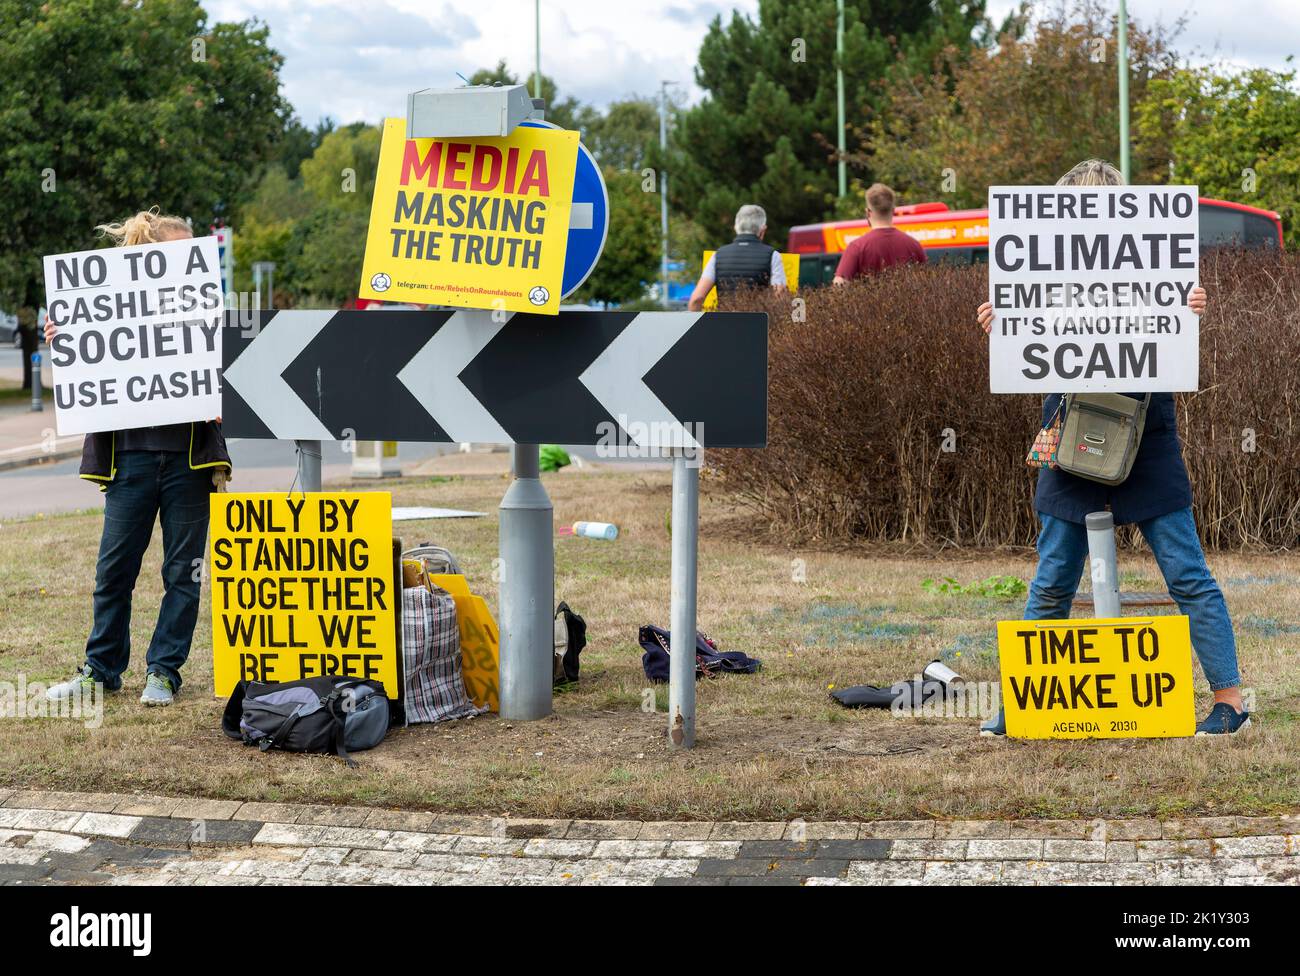 Protestation à la ronde très animée, Martlesham, Suffolk, Angleterre, Royaume-Uni urgence climatique est une arnaque, non à la société sans cajou Banque D'Images